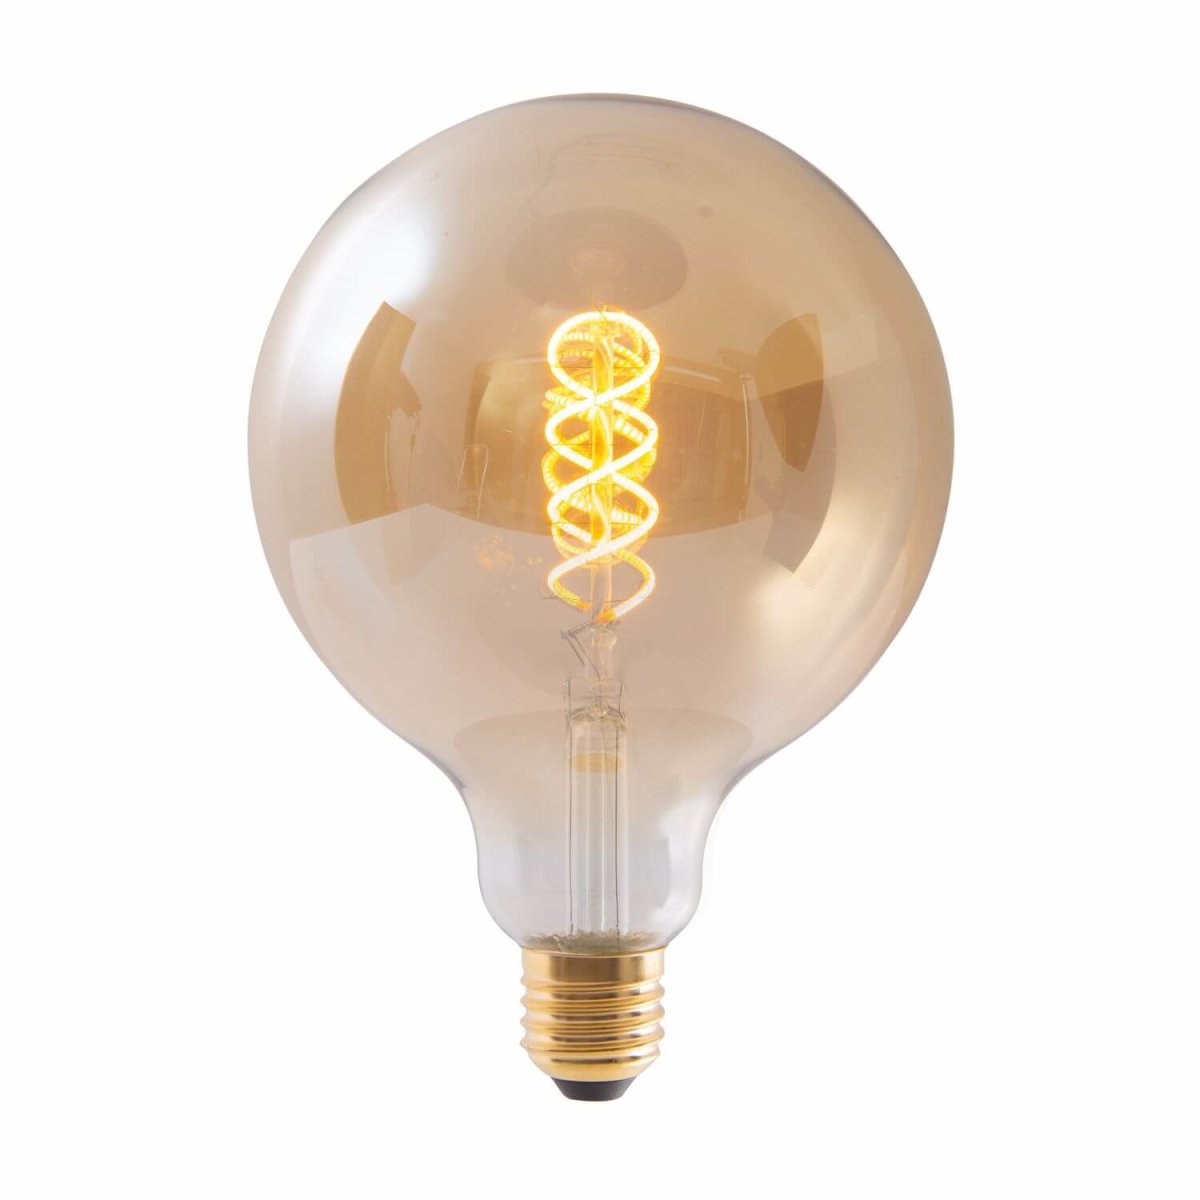 Näve E27 Ø12,5cm dimmbar Warmweiss amber Leuchtmittel LED 41304 LAMPE